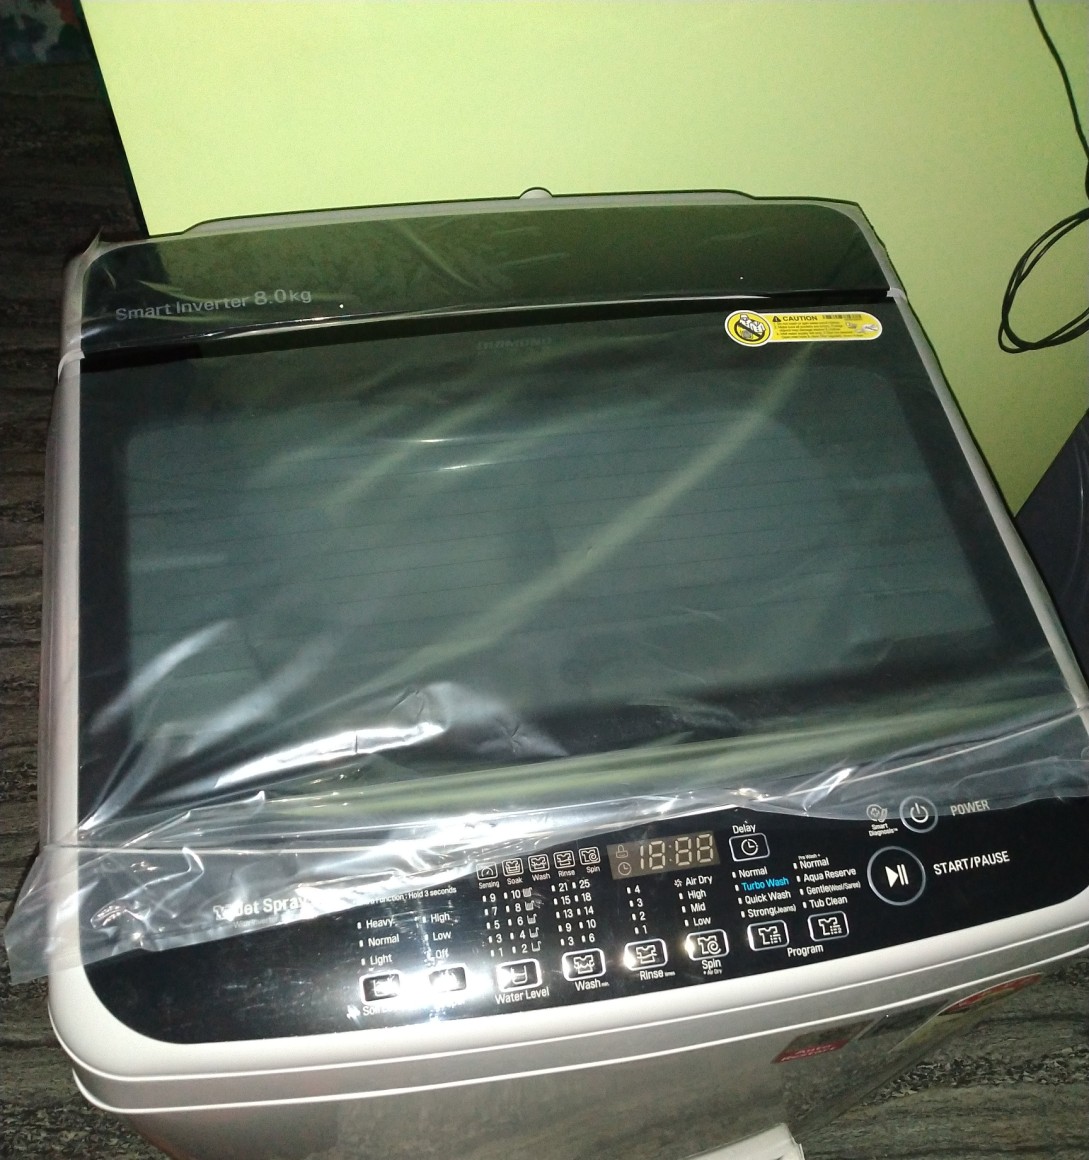 LG 8.0 कग इन्वर्टर फुल्ली-ऑटोमैटिक टॉप लोडिंग वाशिंग मशीन (T80SJBK1Z, ब्लैक नाइट)